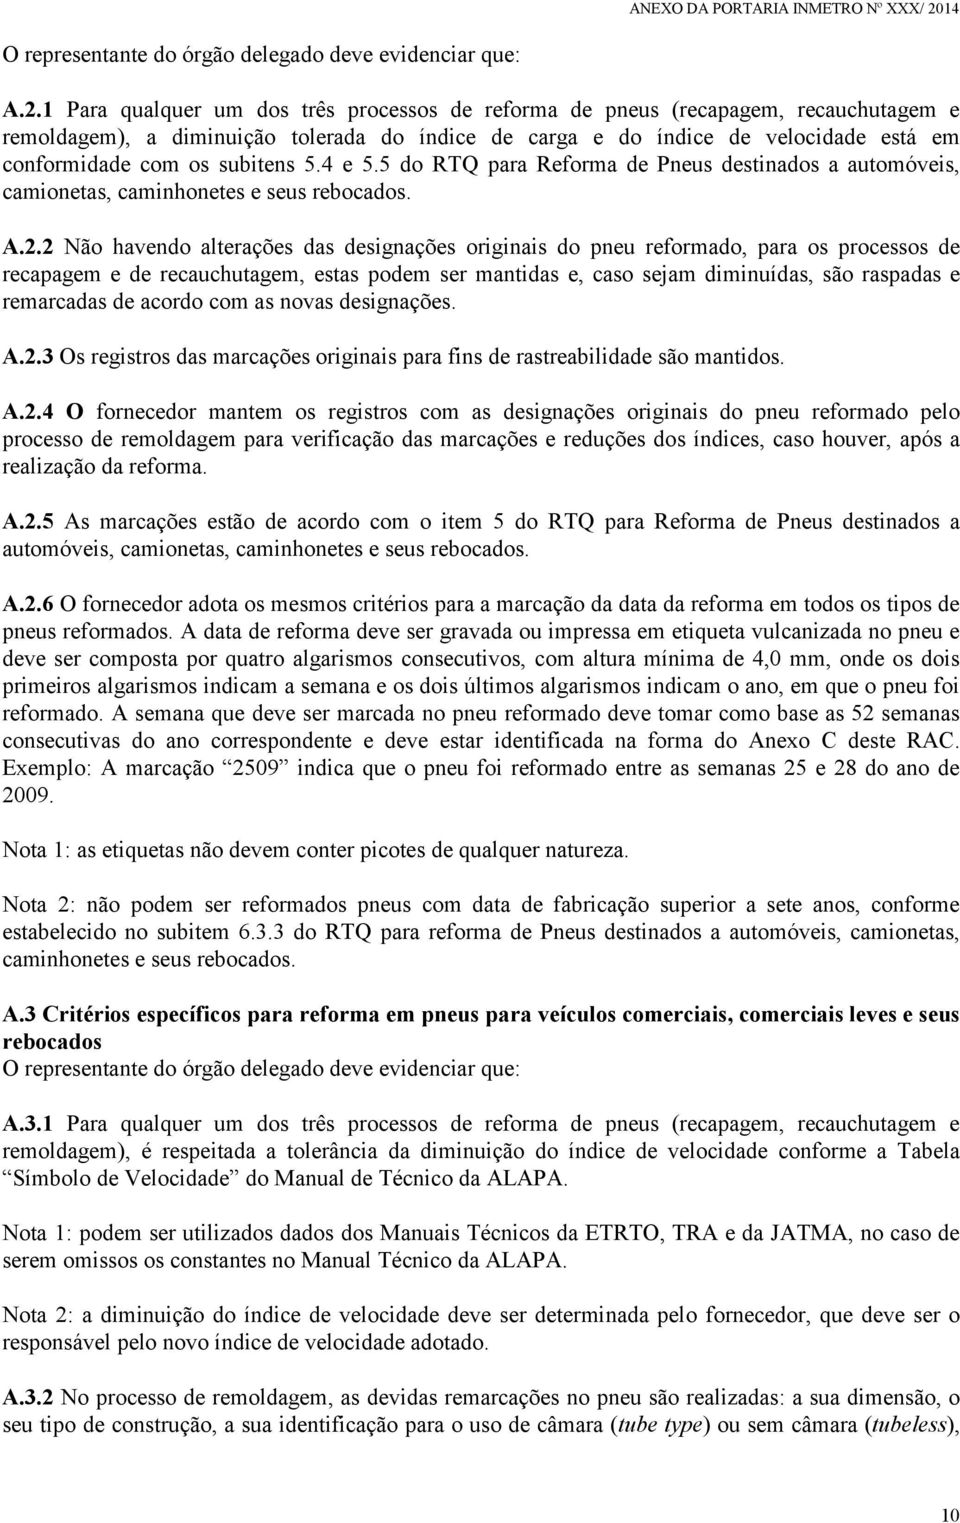 subitens 5.4 e 5.5 do RTQ para Reforma de Pneus destinados a automóveis, camionetas, caminhonetes e seus rebocados. A.2.